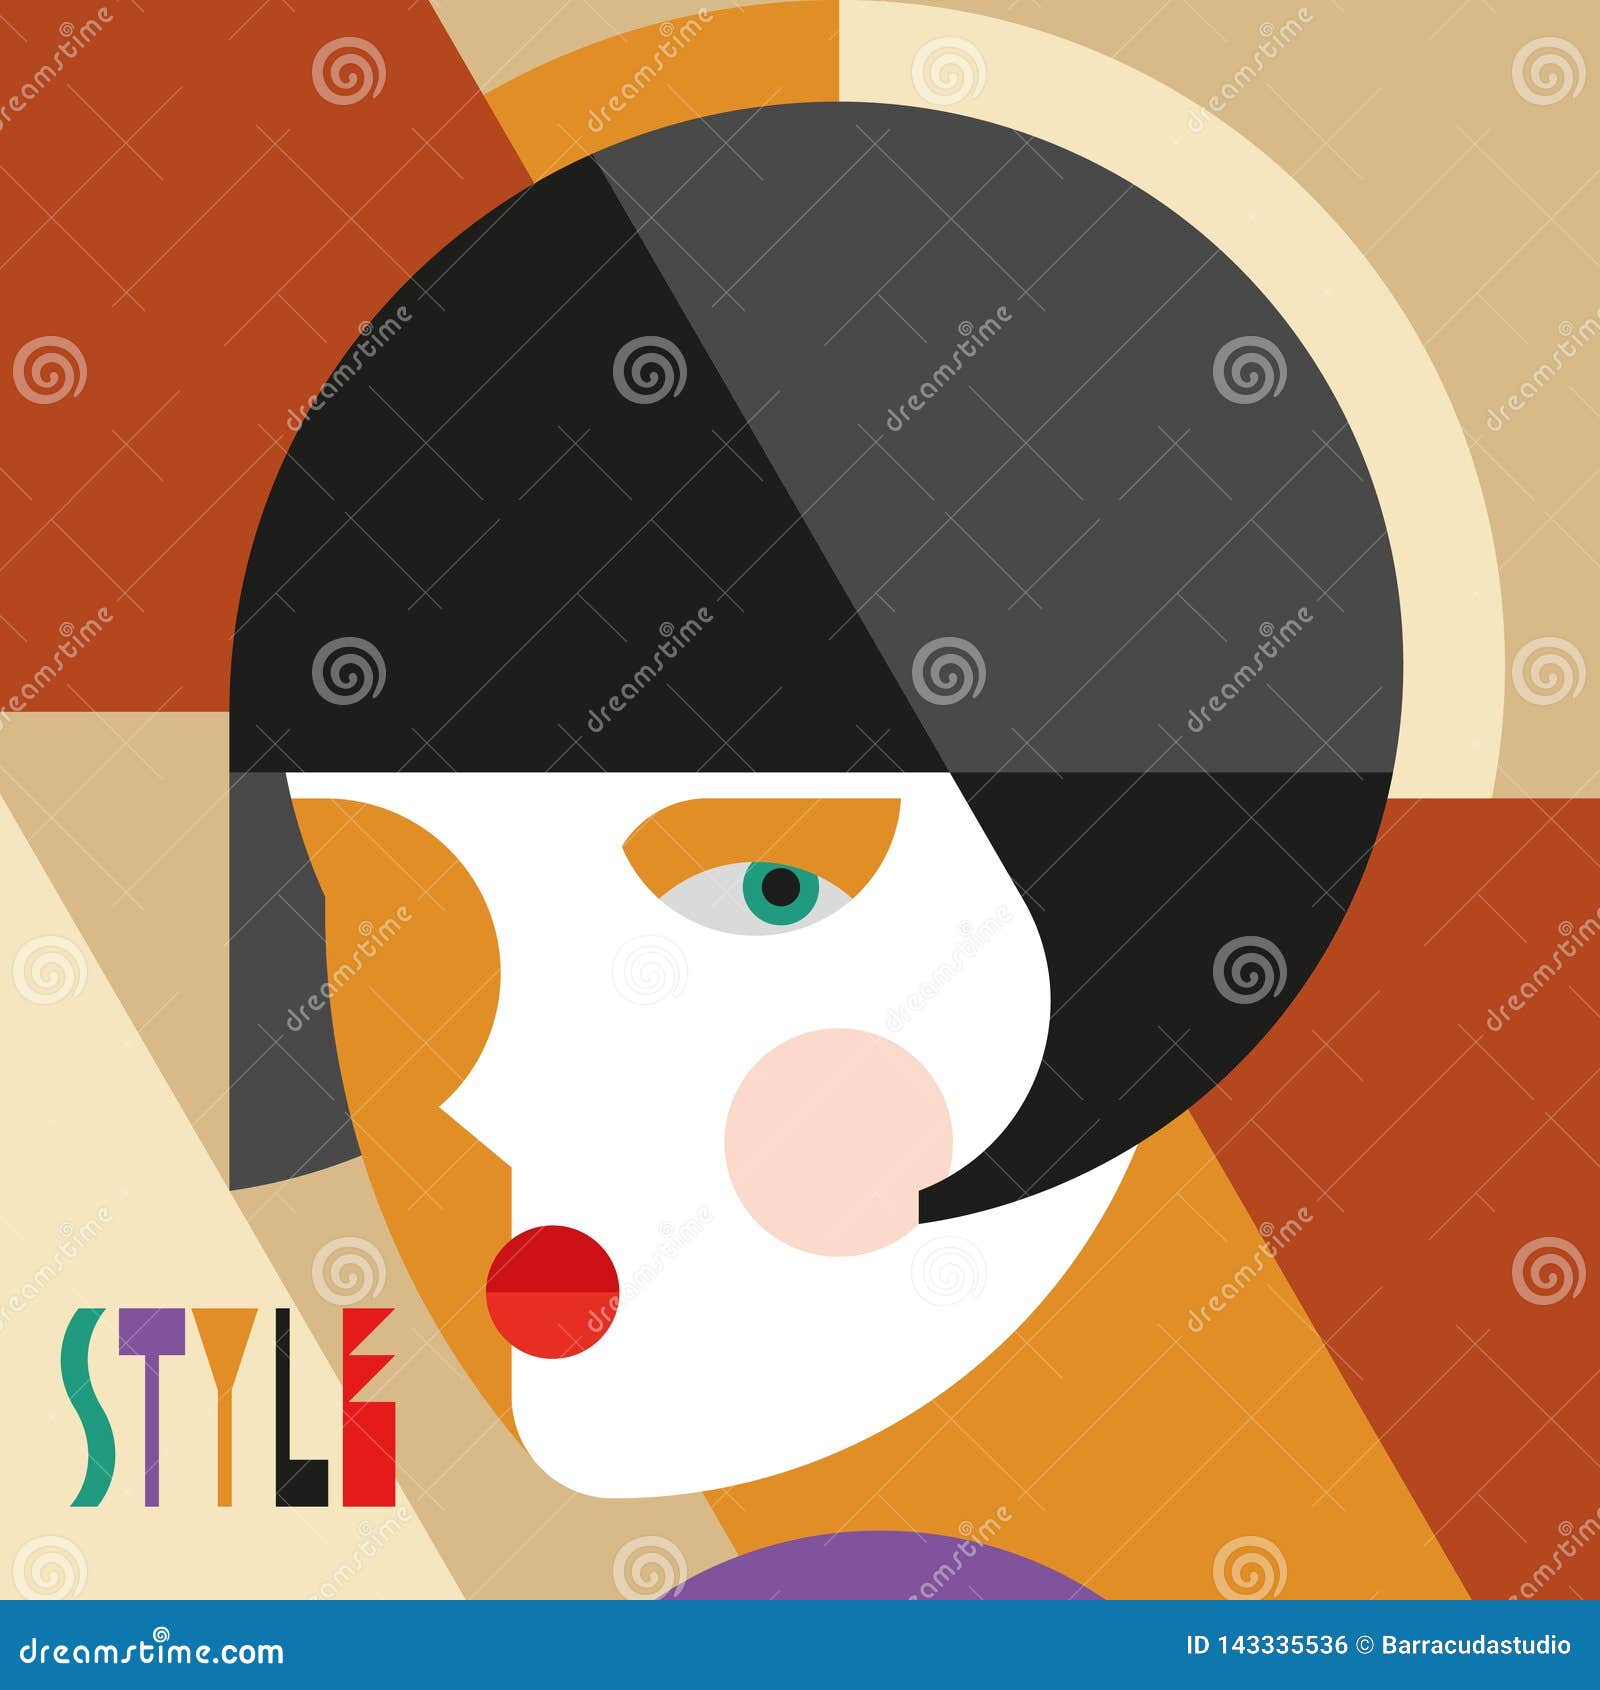 fashionable stylish woman. modernist style woman head with stylish headdress. modernism style art.